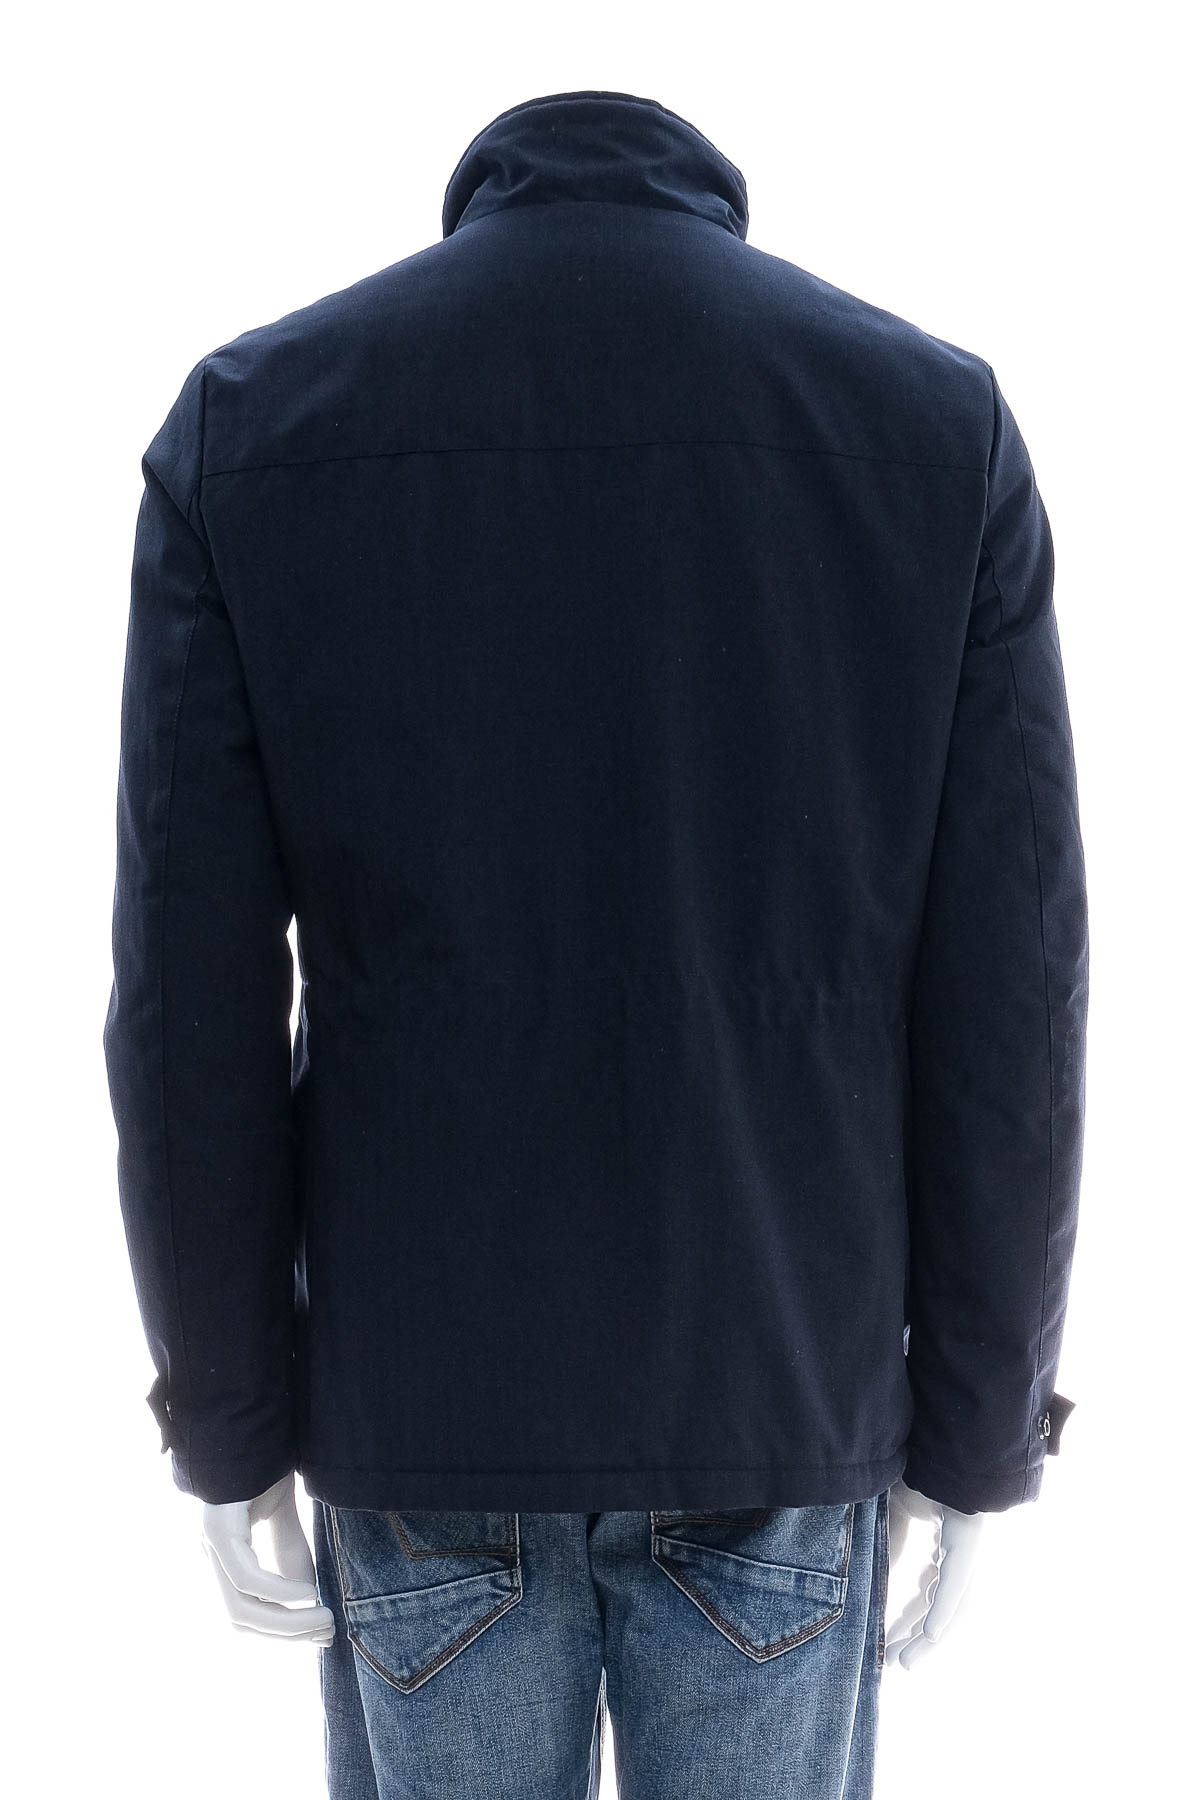 Men's jacket - Conbipel - 1